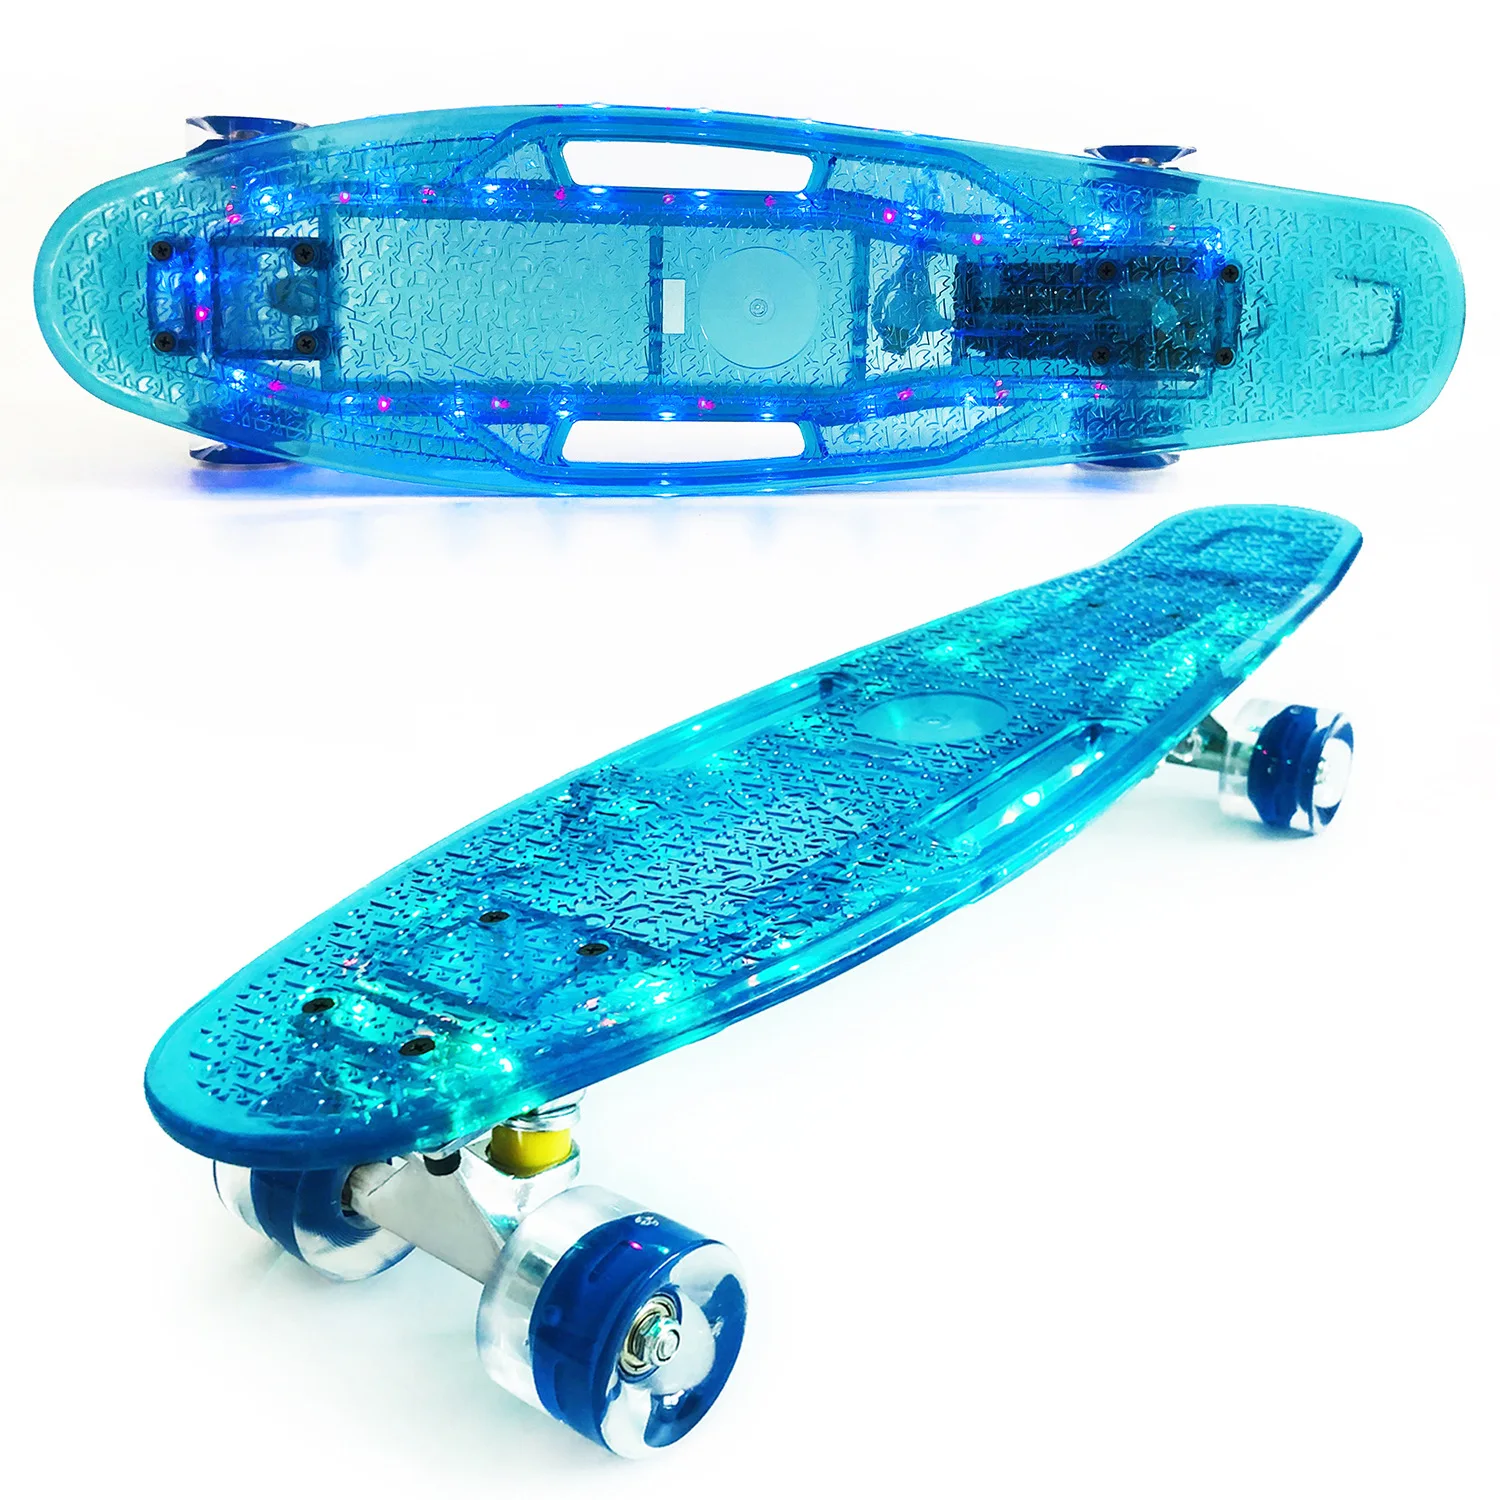 LED Skateboard 22inch Penny Board Flash Wheel Bluetooth Fish Board Mini Plastic Longboard 4 Wheel Scooter Children Skate Boards